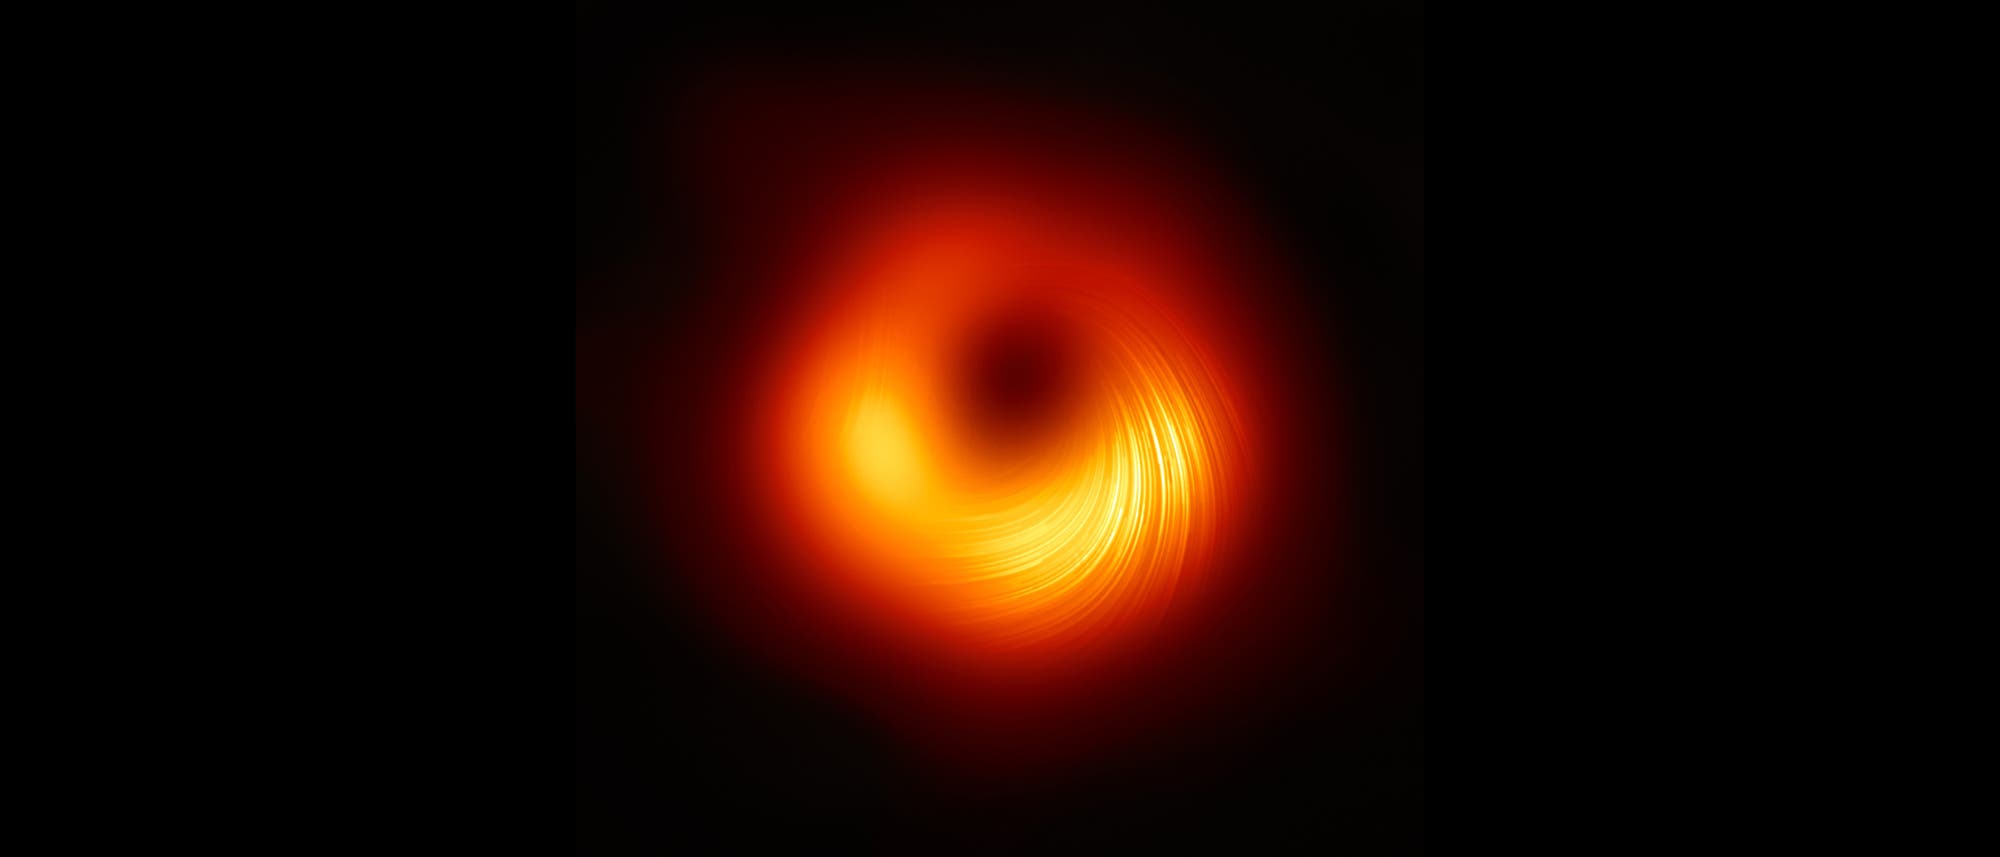 Das Schwarze Loch aus M87 mit "Polarisationslinien", aus denen Experten den der Verlauf der Magnetfelder ablesen können